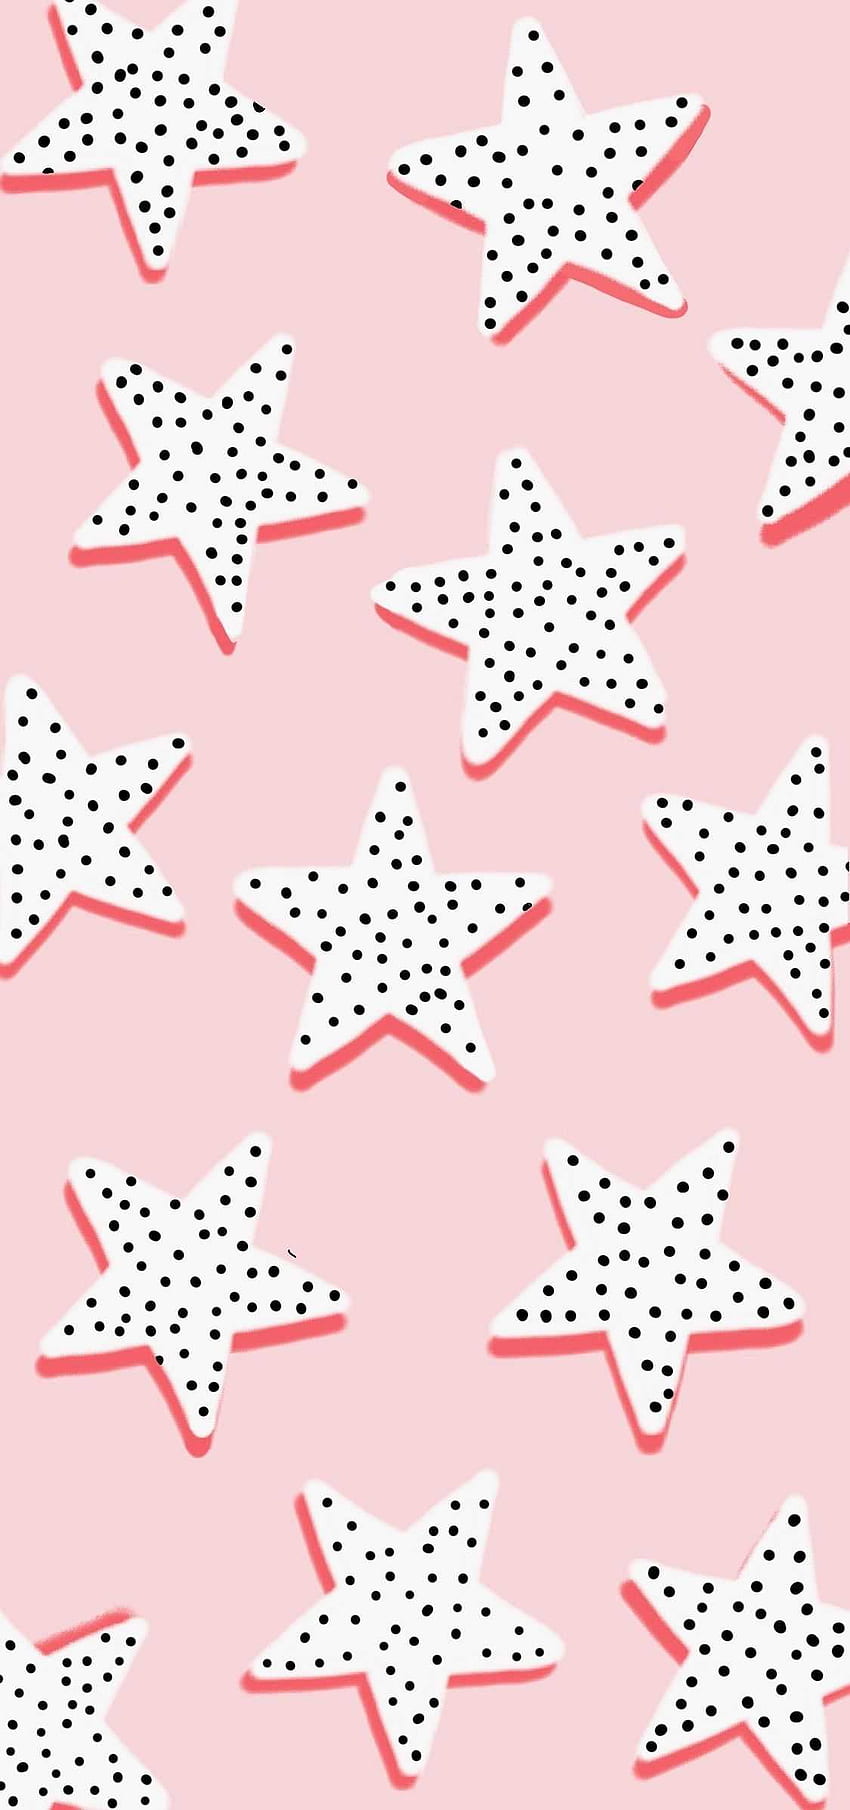 Đừng bỏ lỡ cơ hội sở hữu bộ sưu tập hình nền bắt mắt mang tên Stars Pink Preppy. Với những họa tiết đẹp mắt và độc đáo, chắc chắn bạn sẽ được thỏa sức sáng tạo và trang trí cho chiếc điện thoại hay máy tính của mình thêm phần tinh tế và thời thượng.